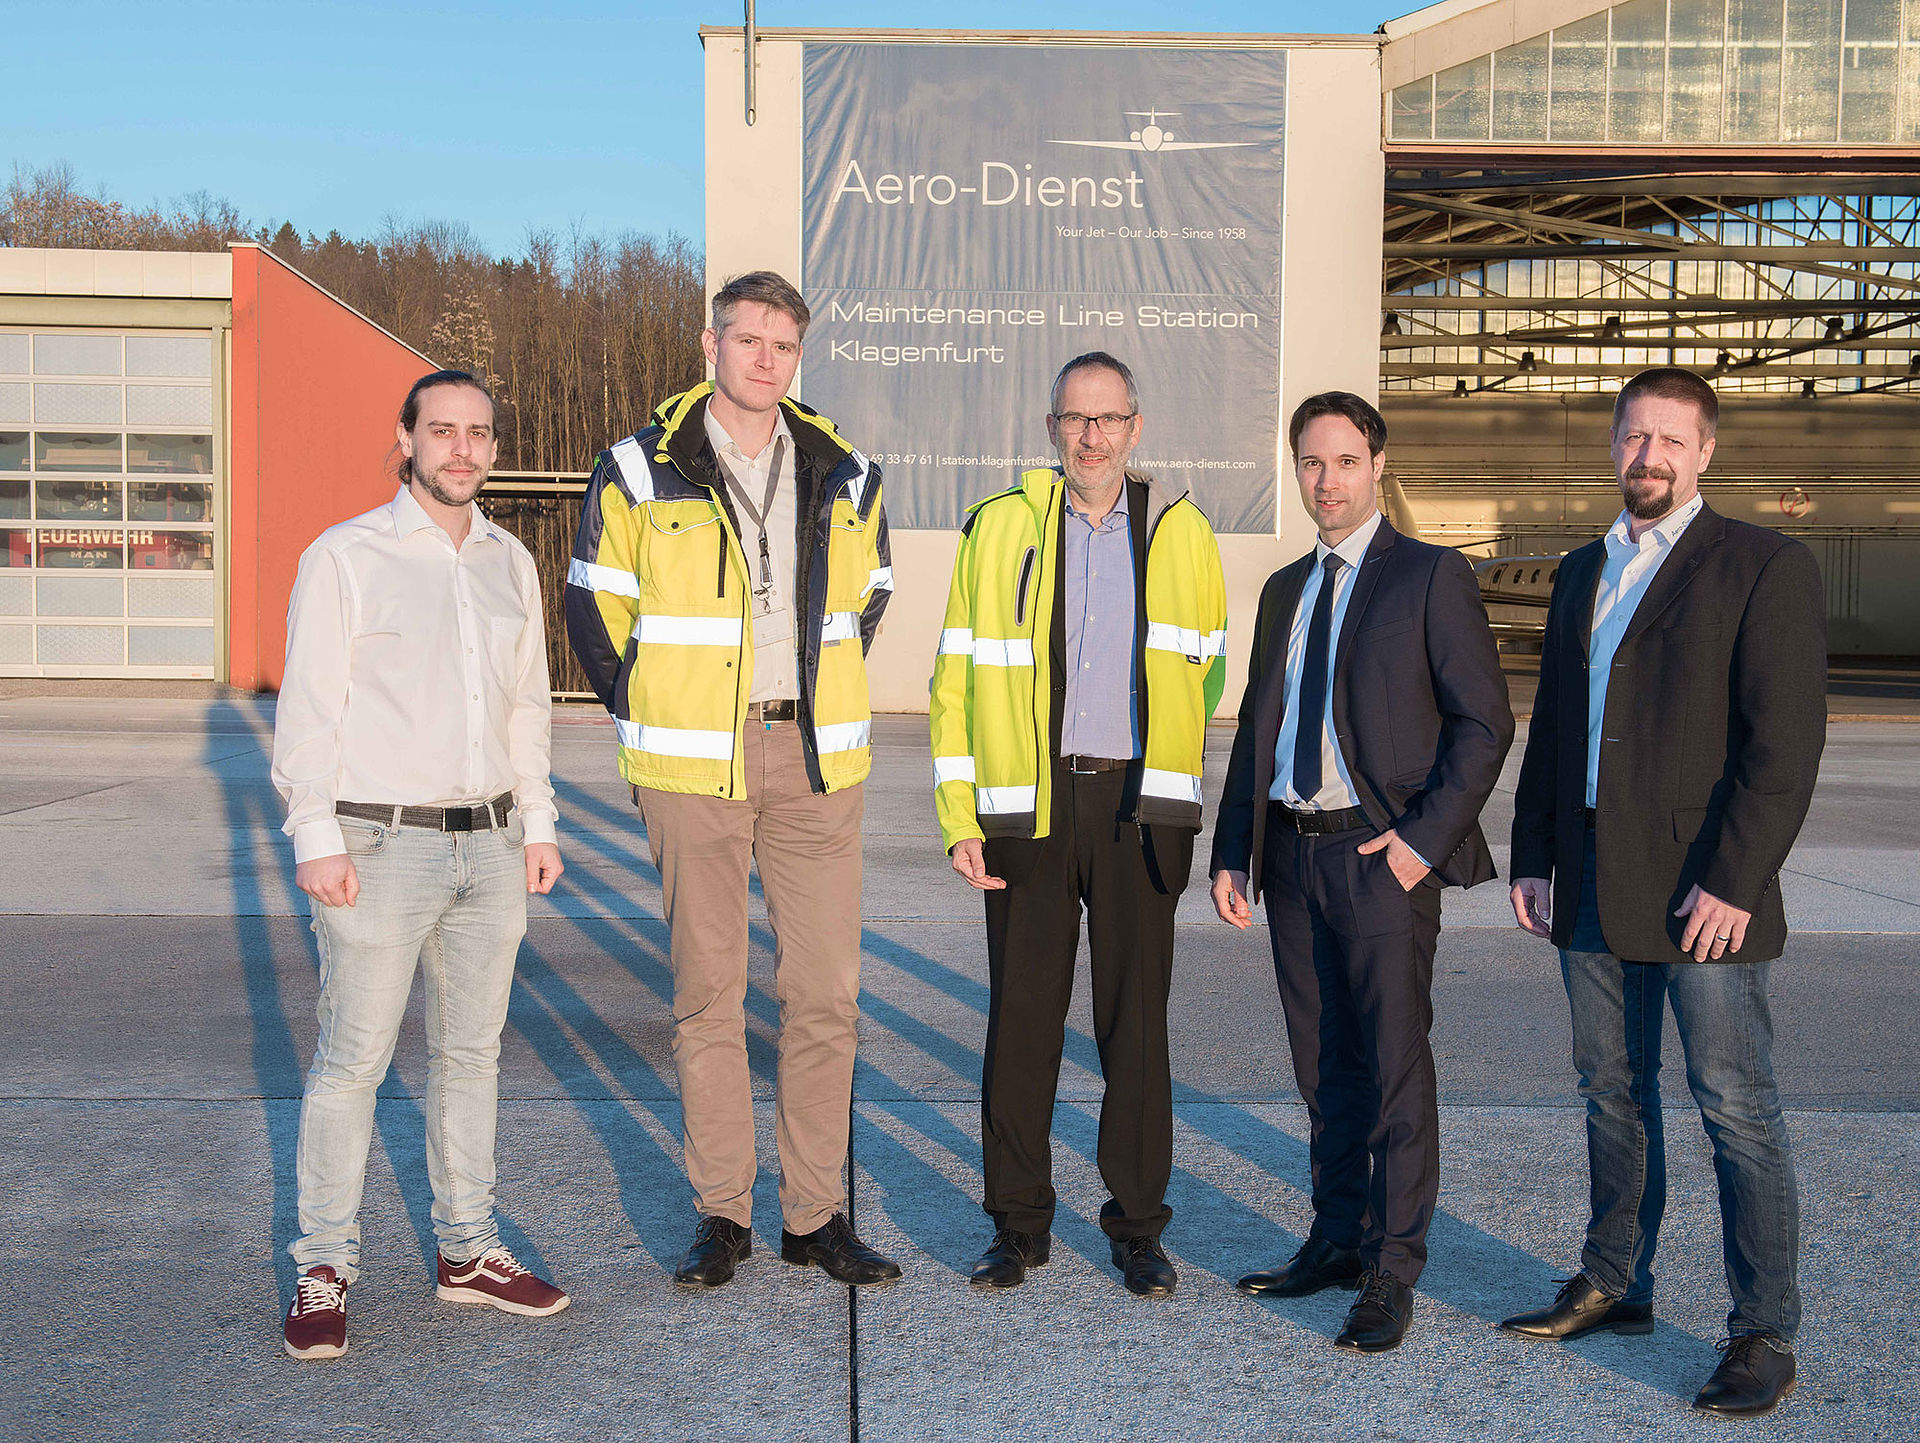 Aero-Dienst feiert die Eröffnung einer Line Station am Flughafen Klagenfurt, Österreich